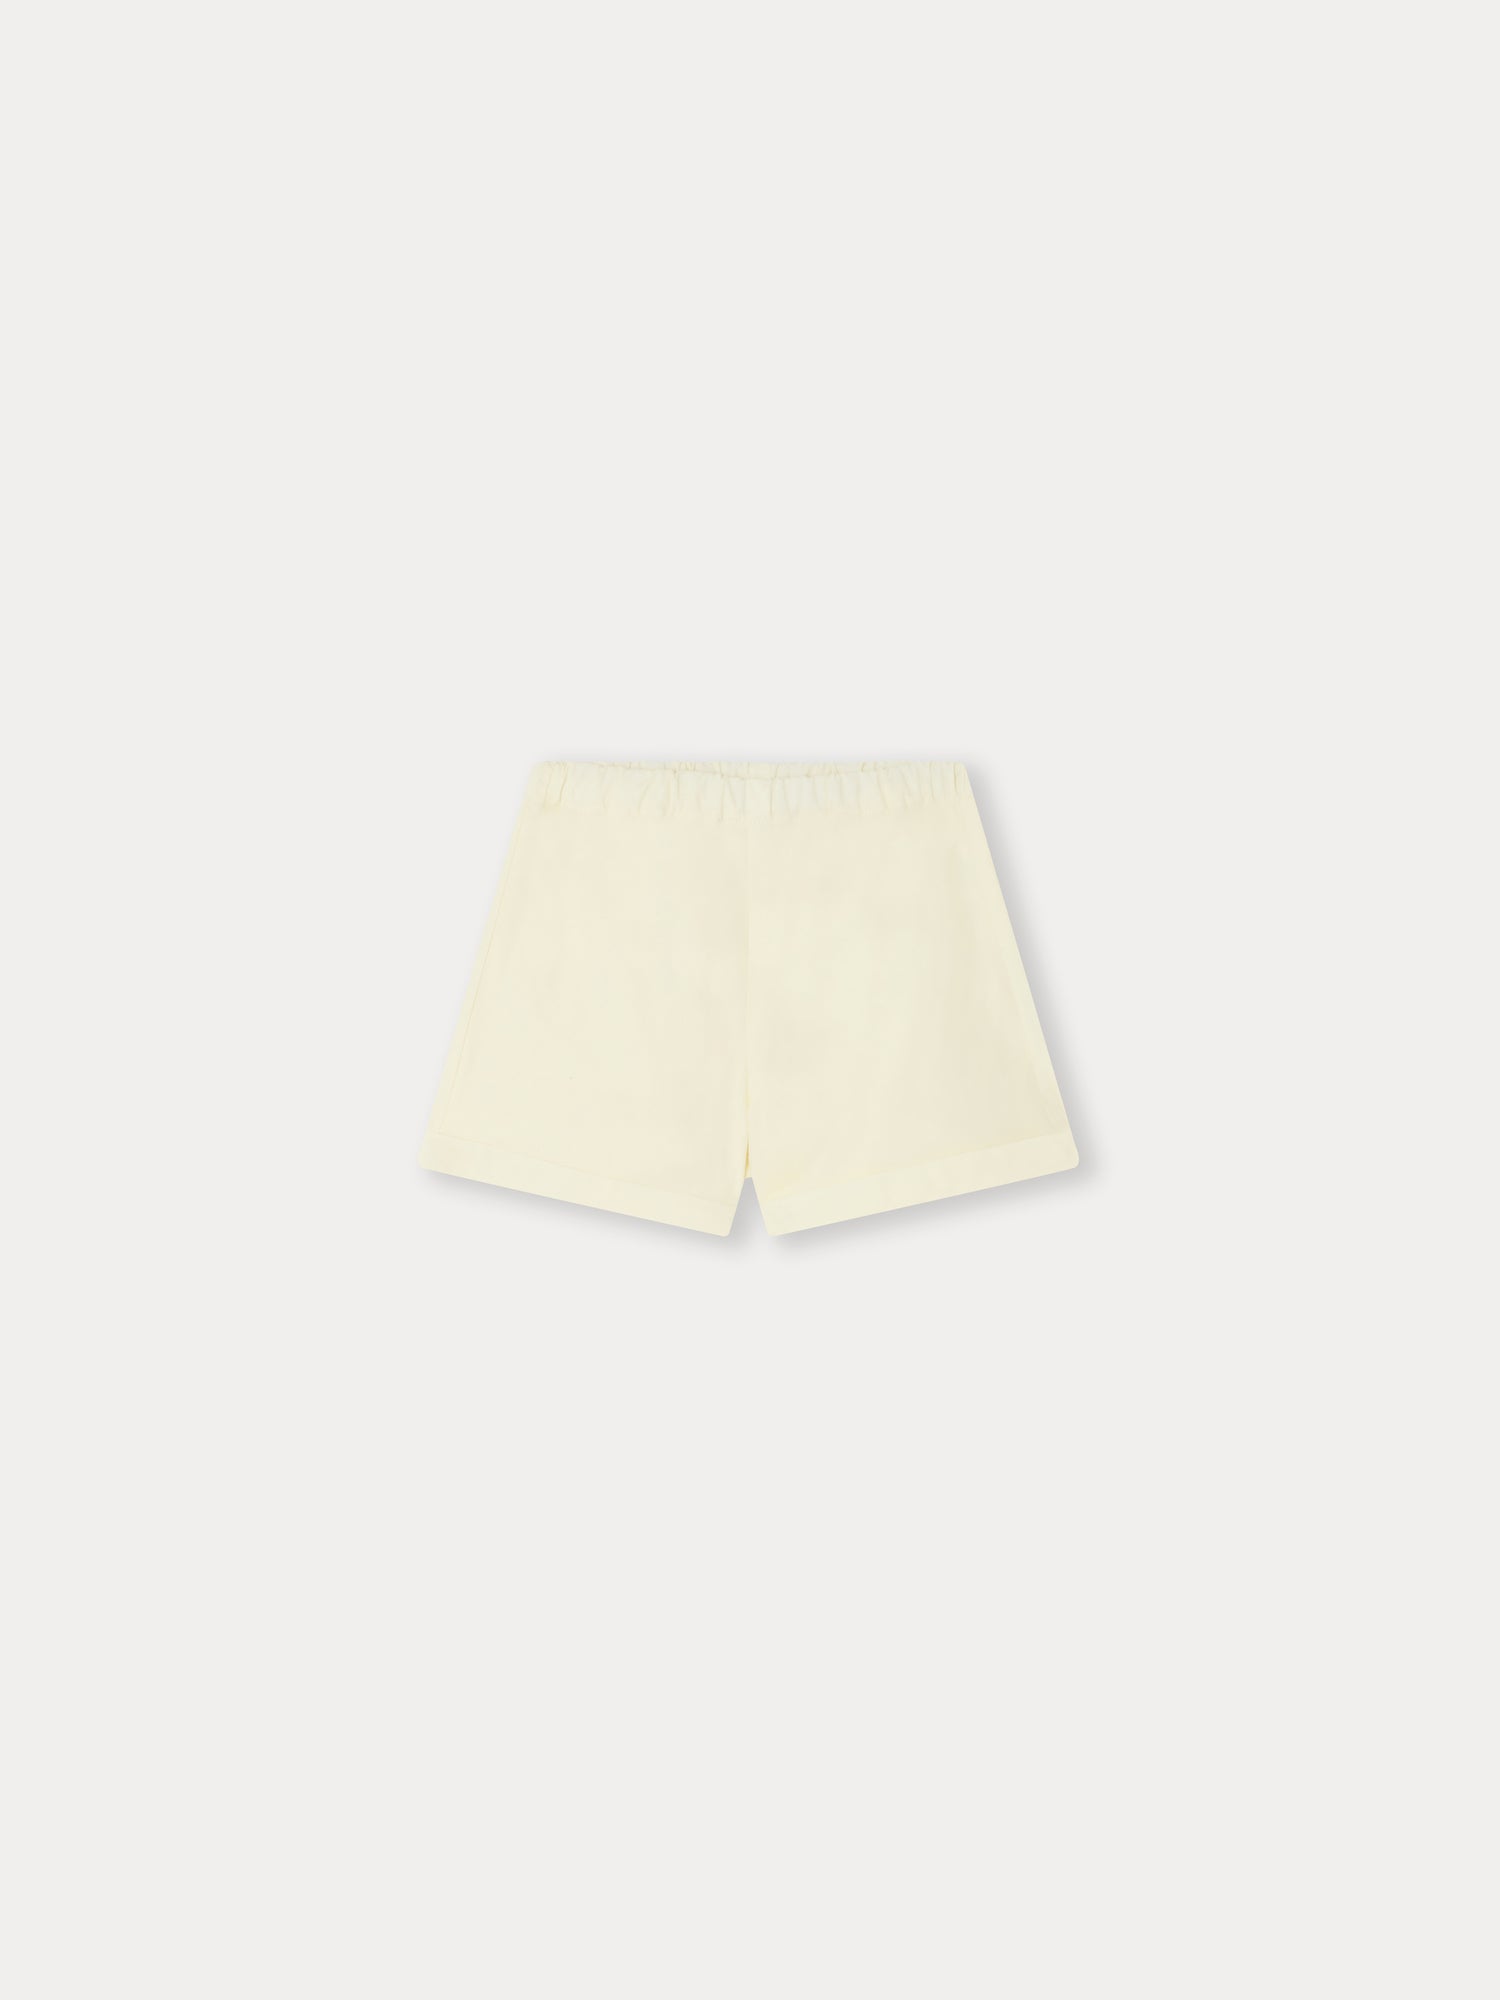 Bonpoint Nougat cotton shorts - White